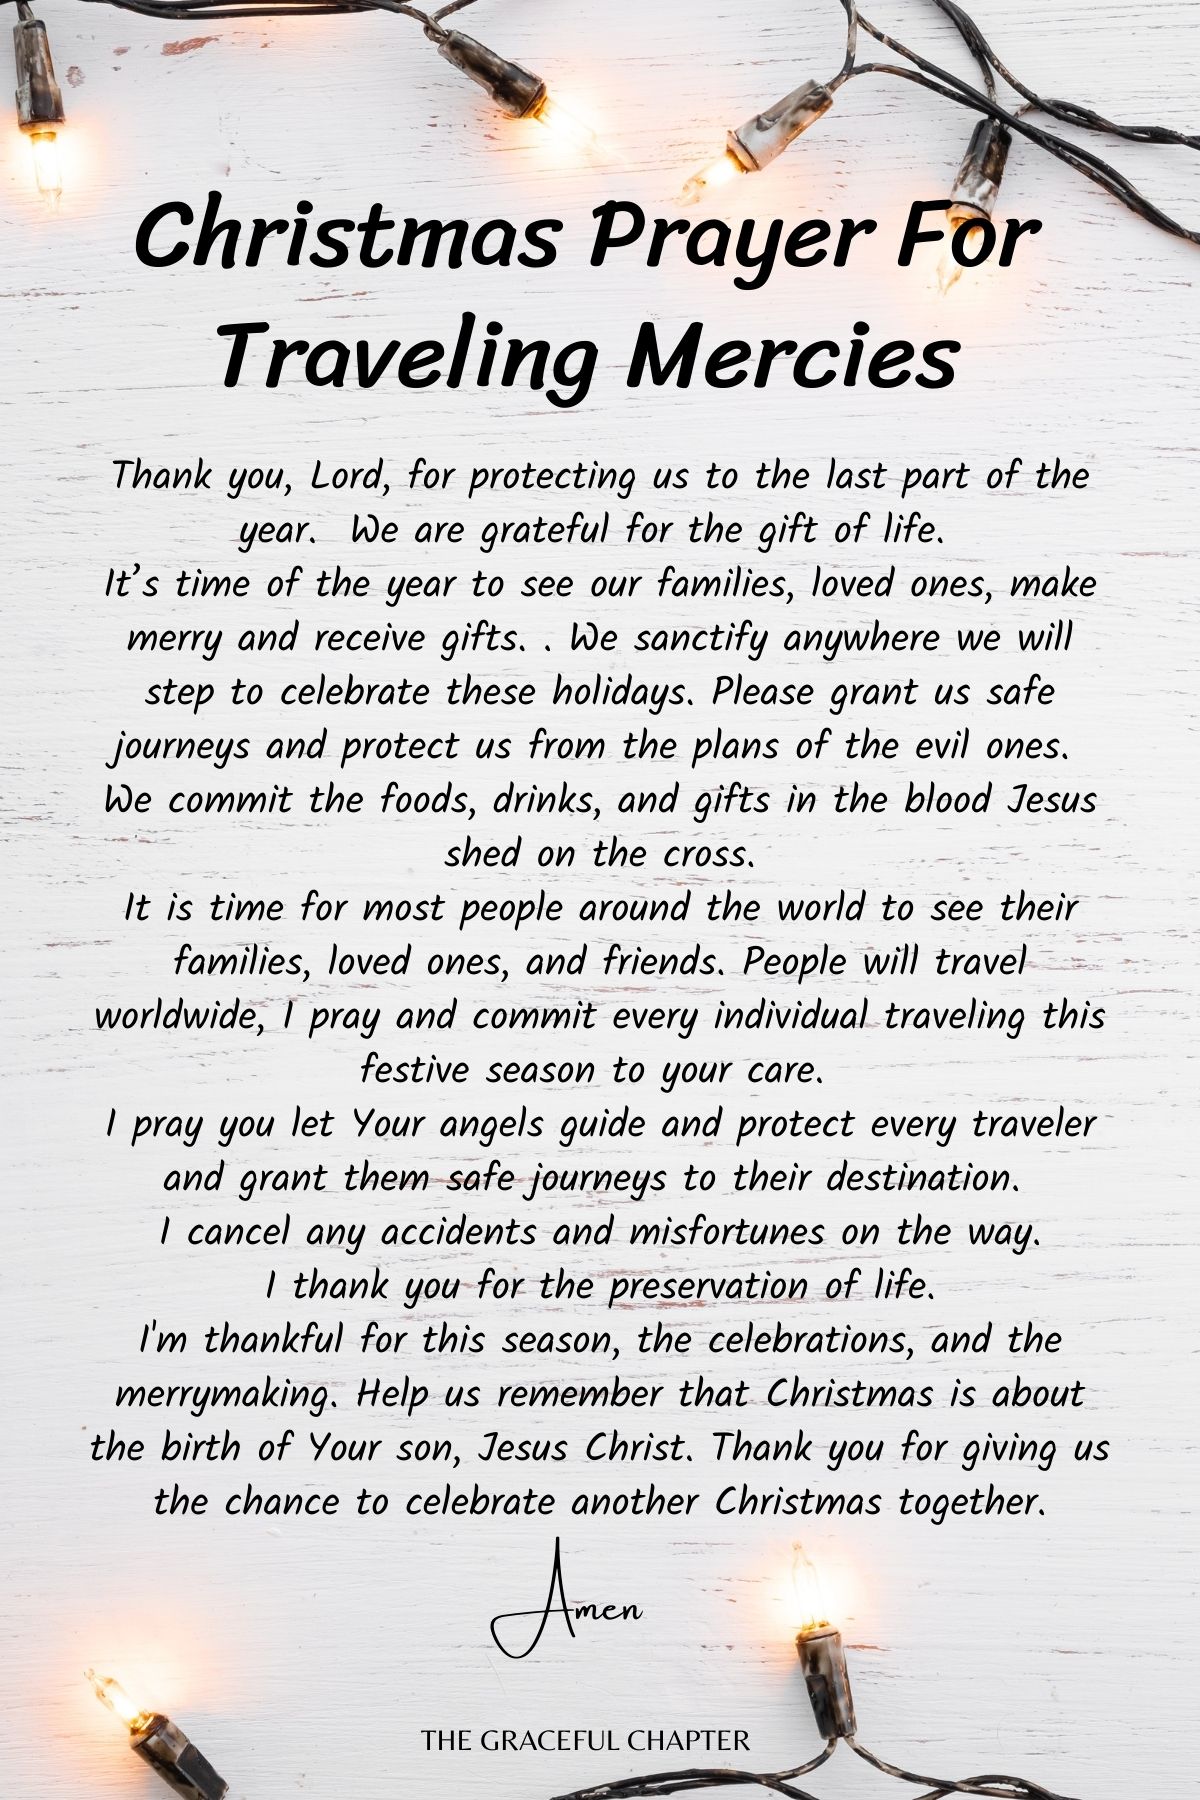 Christmas prayer for traveling mercies